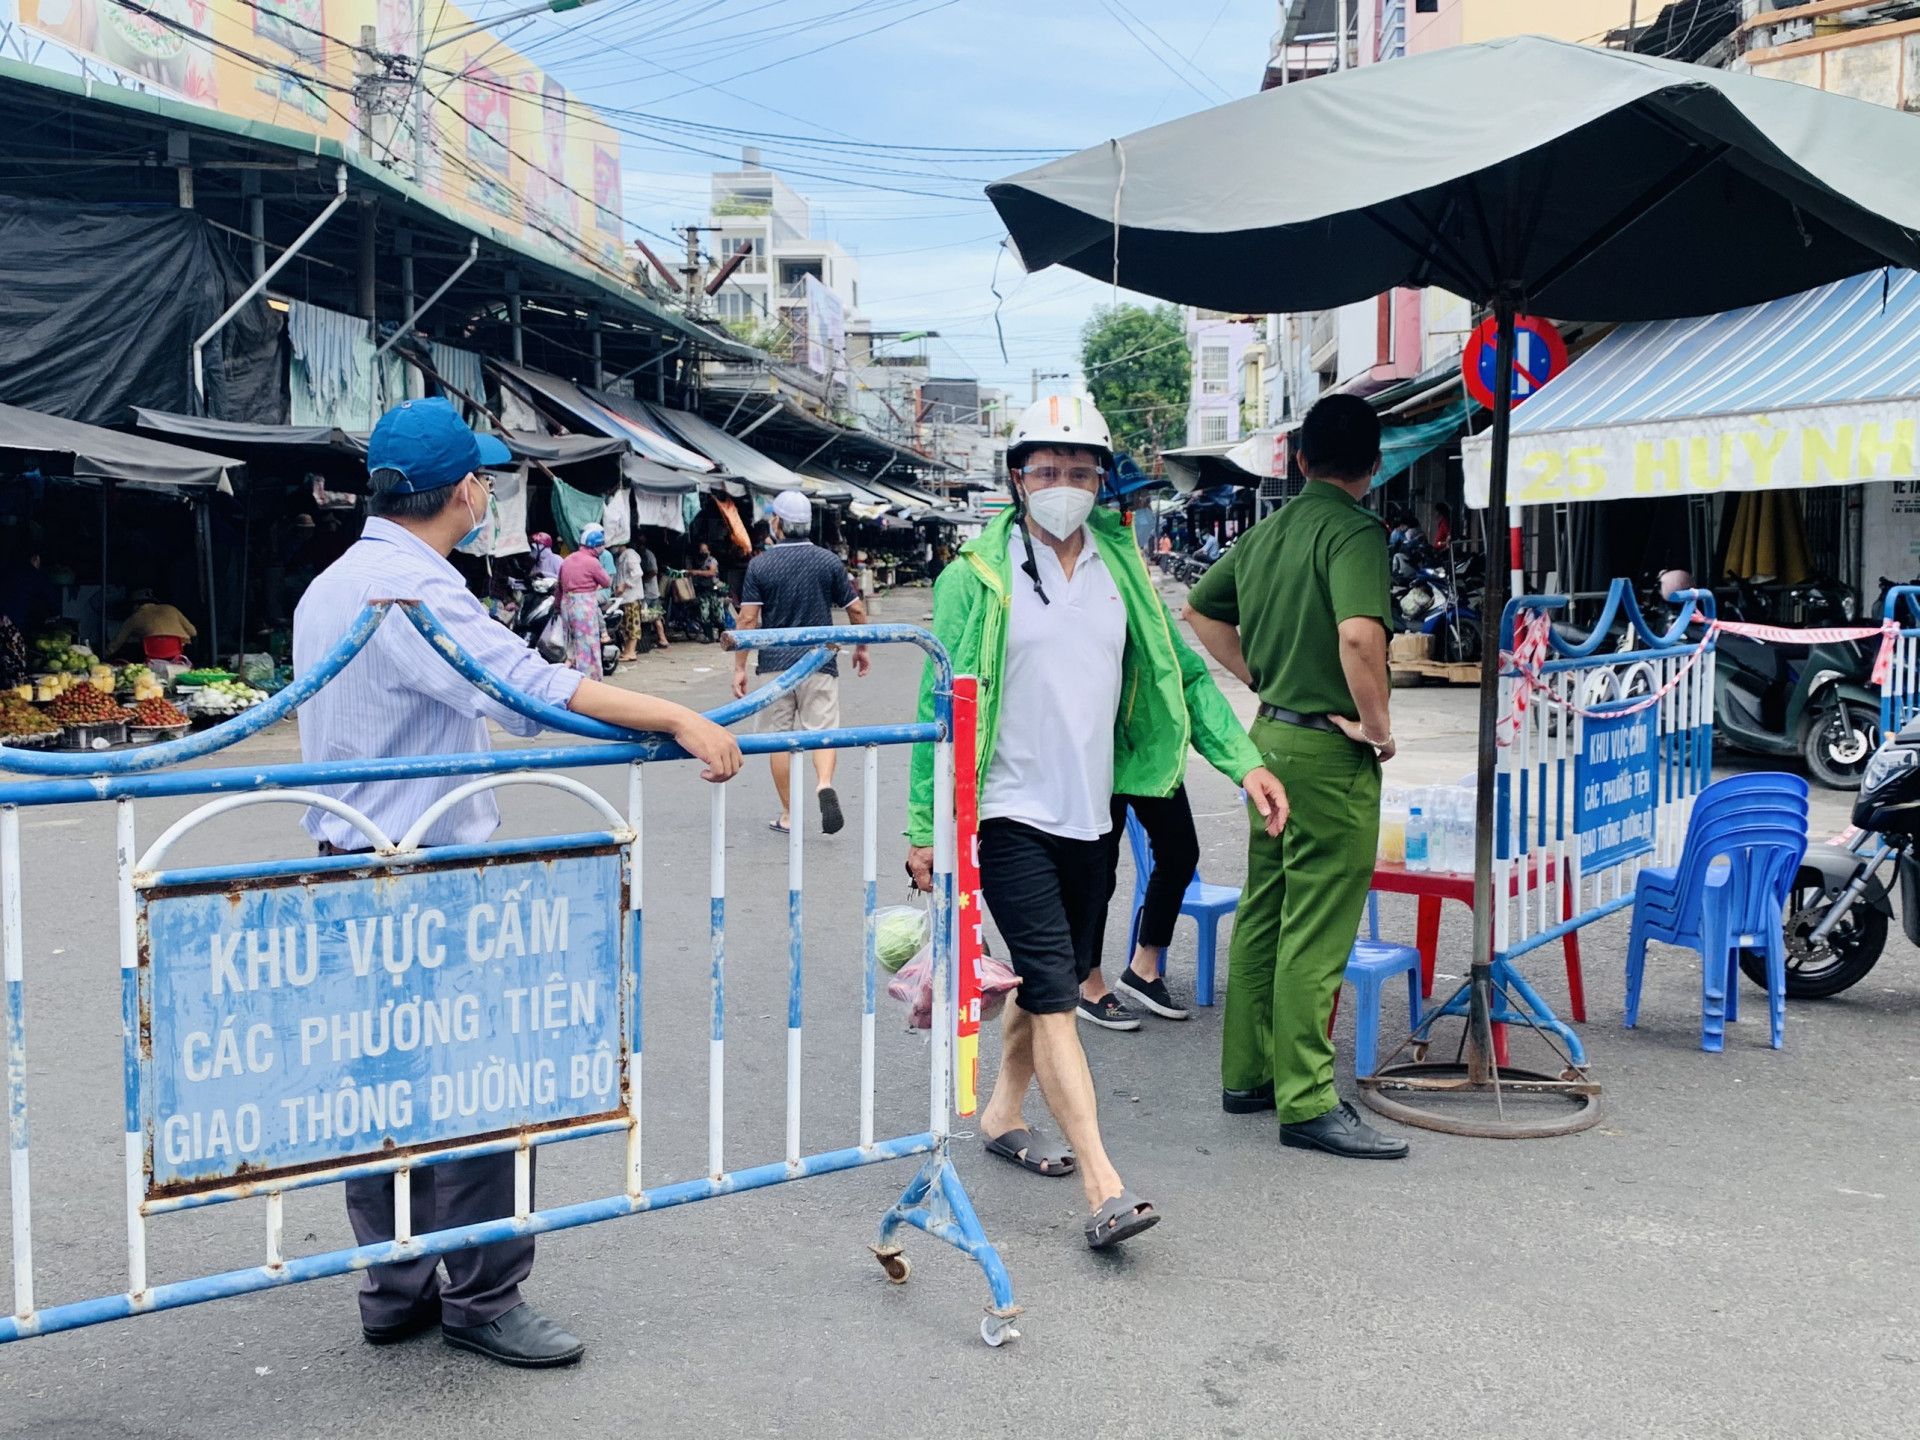 Chợ Xóm Mới Tp. Nha Trang đã được kiểm soát chặt từ ngày 13-7